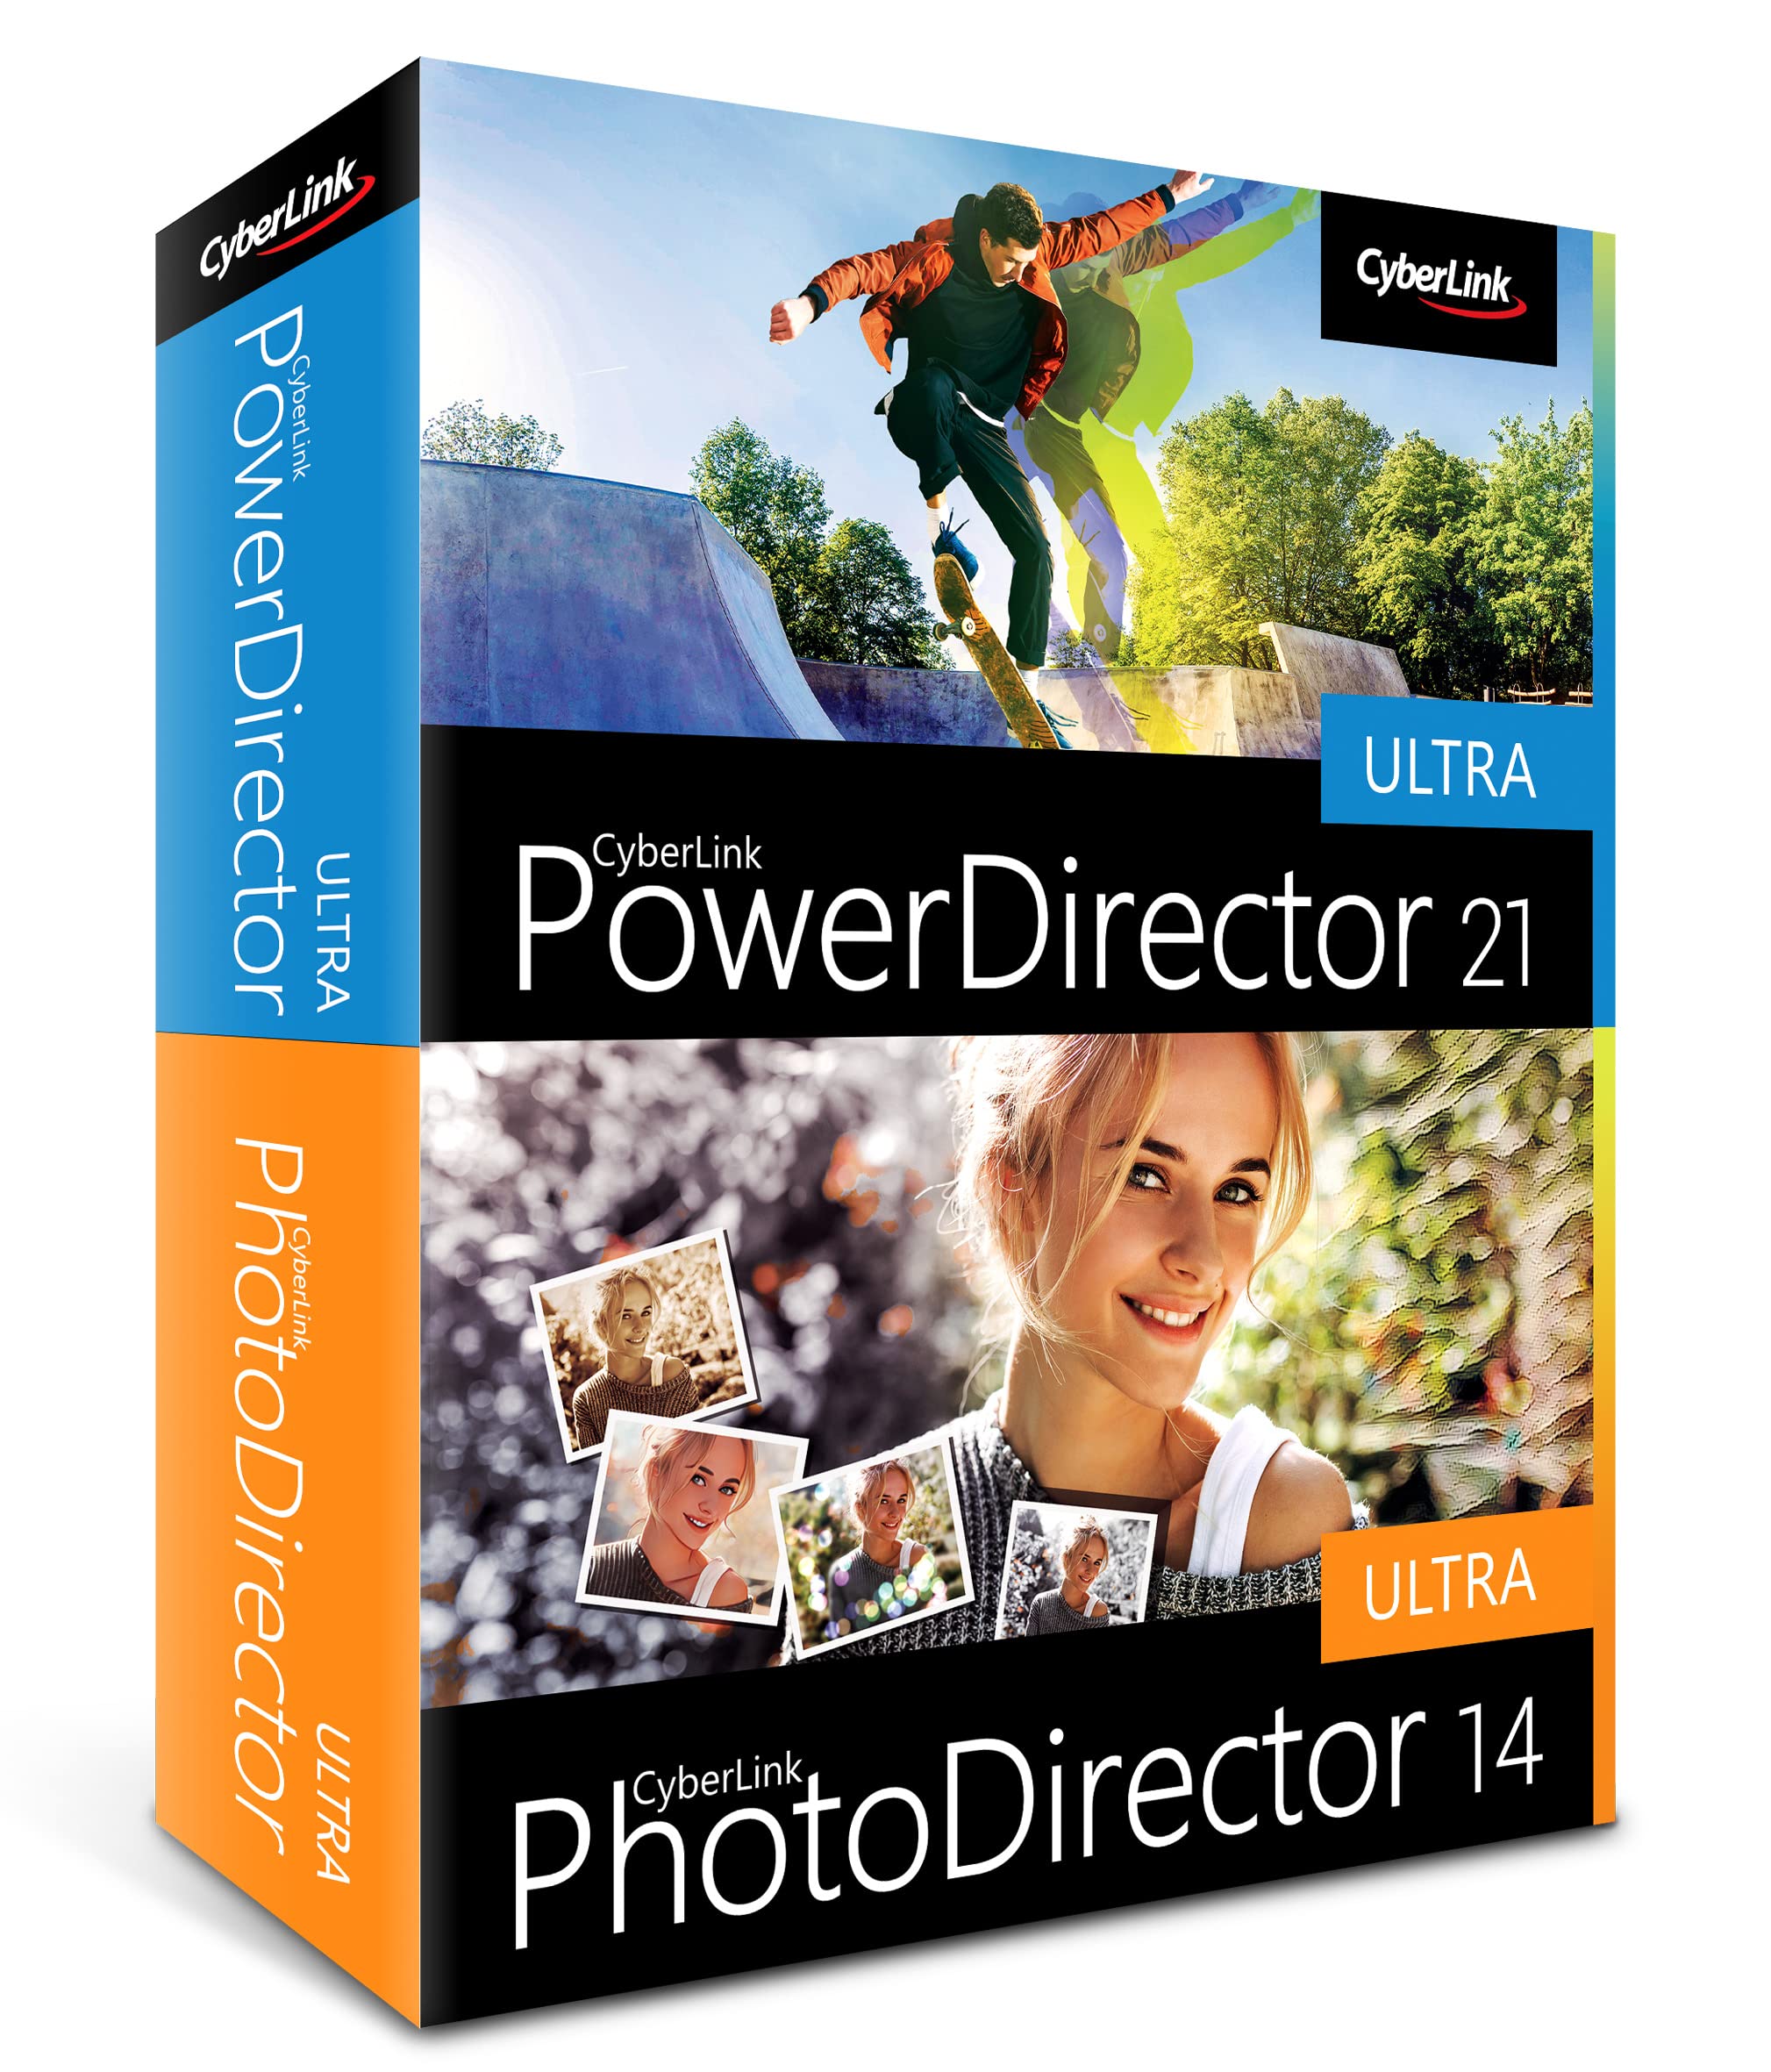 CyberLink PowerDirector 21 Ultra & PhotoDirector 14 Ultra | Benutzerfreundliches Videobearbeitungsprogramm für PC mit Greenscreen | Screen Recorder | Leistungsstarkes Bildbearbeitungsprogramm [Box]